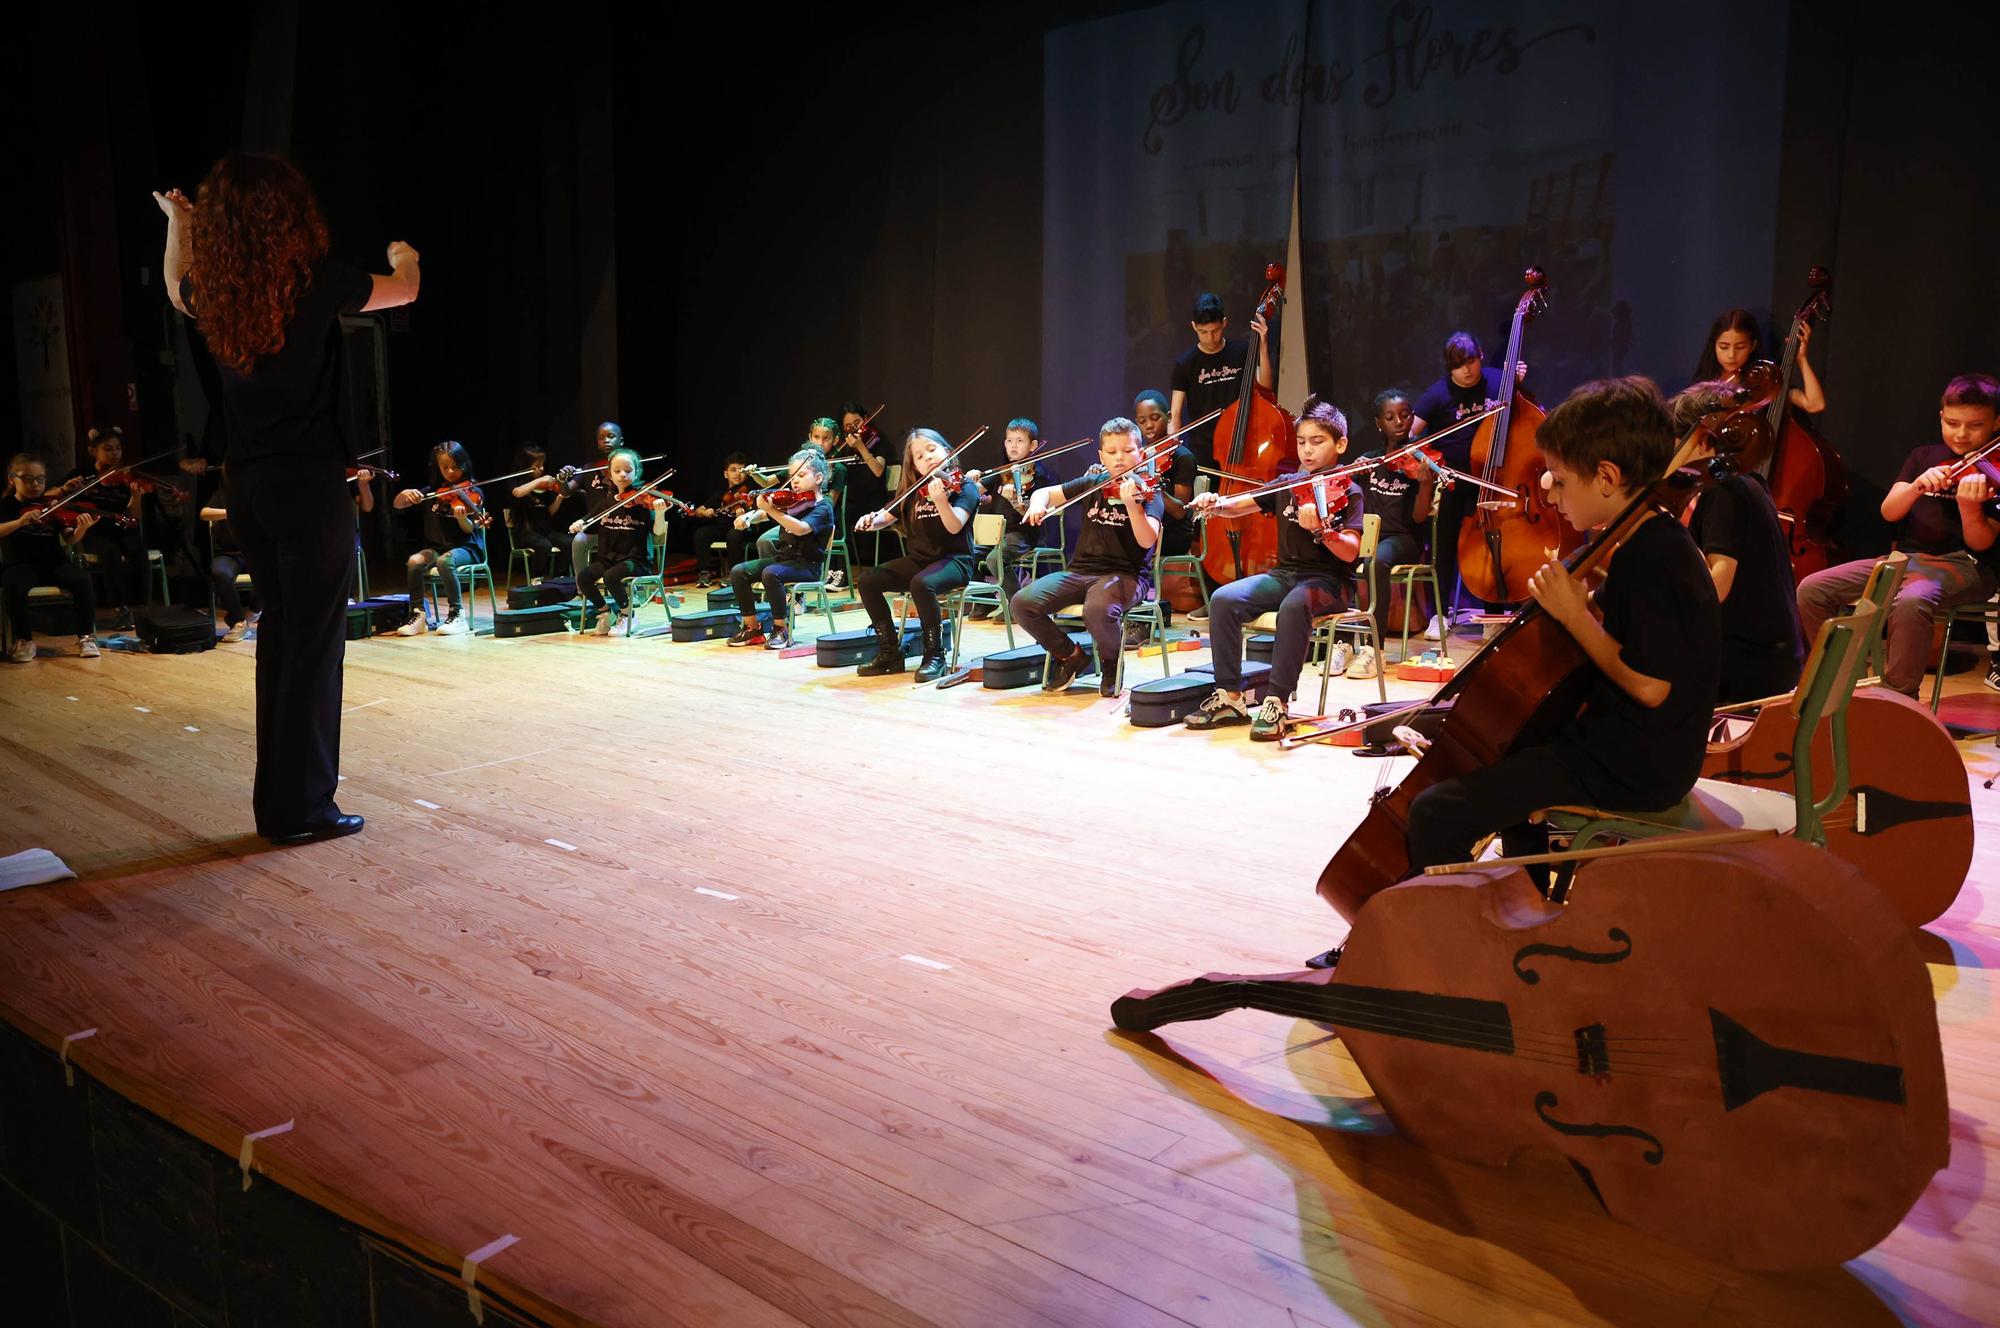 Primer concierto de la orquesta 'Son das Flores' del CEIP Vicente Risco, en junio de 2022